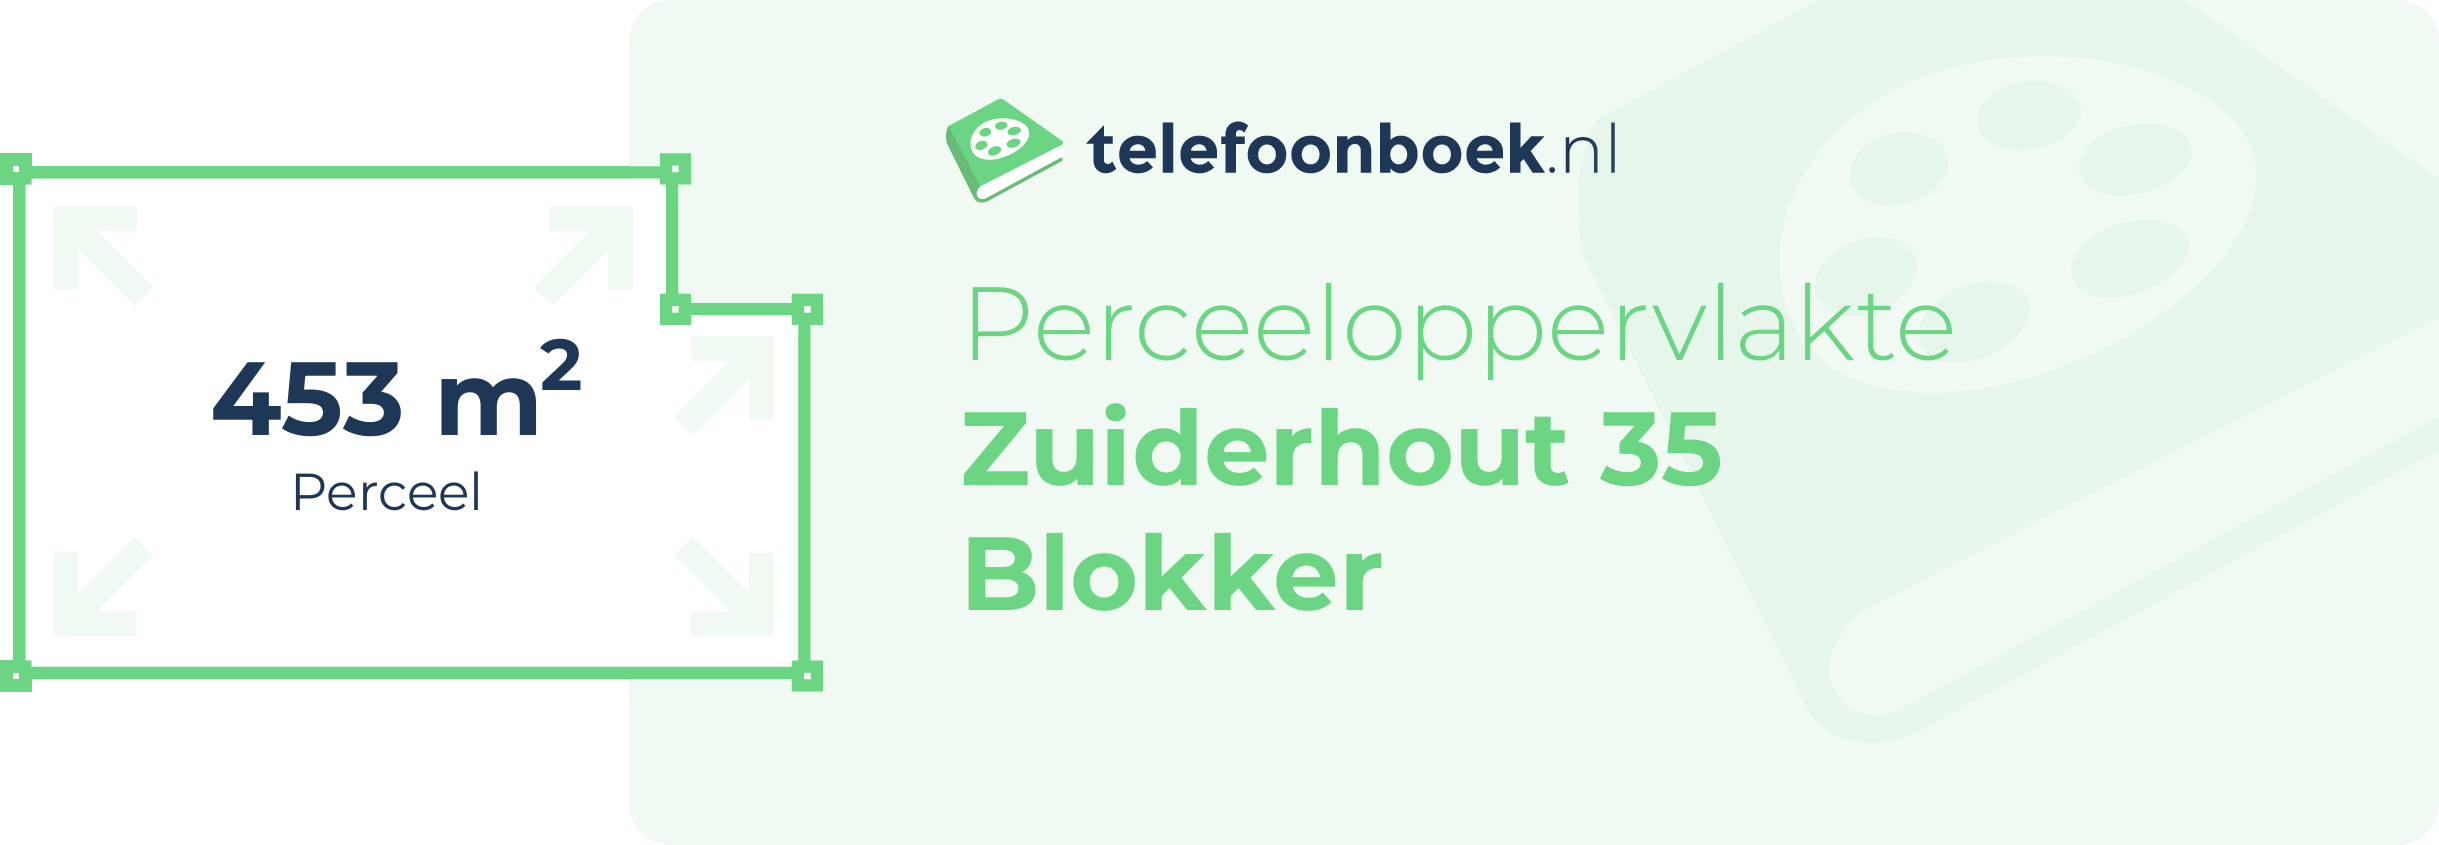 Perceeloppervlakte Zuiderhout 35 Blokker